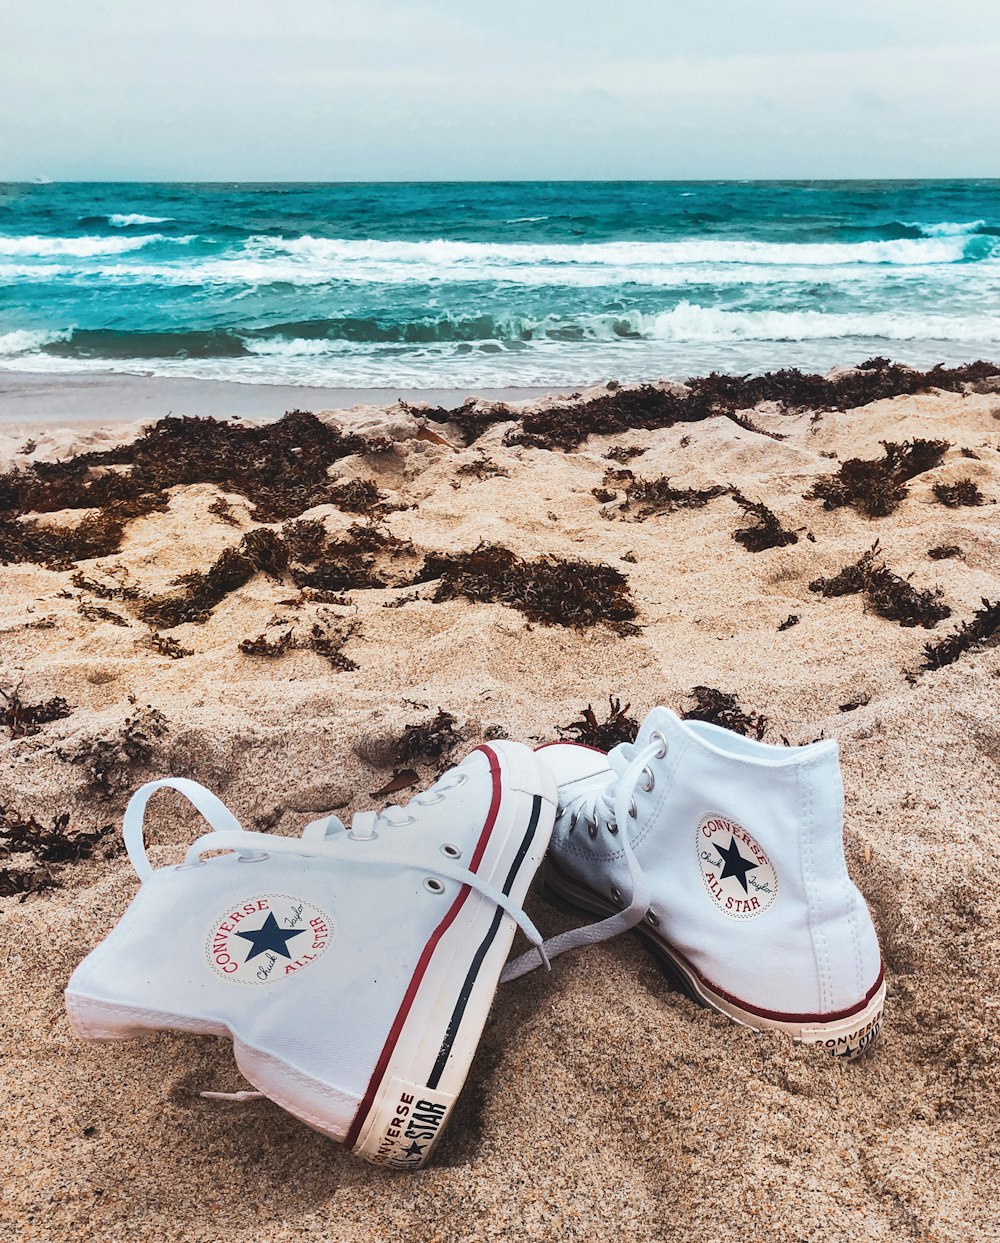 Scarpe da ginnastica alte Converse All Star bianche sulla spiaggia